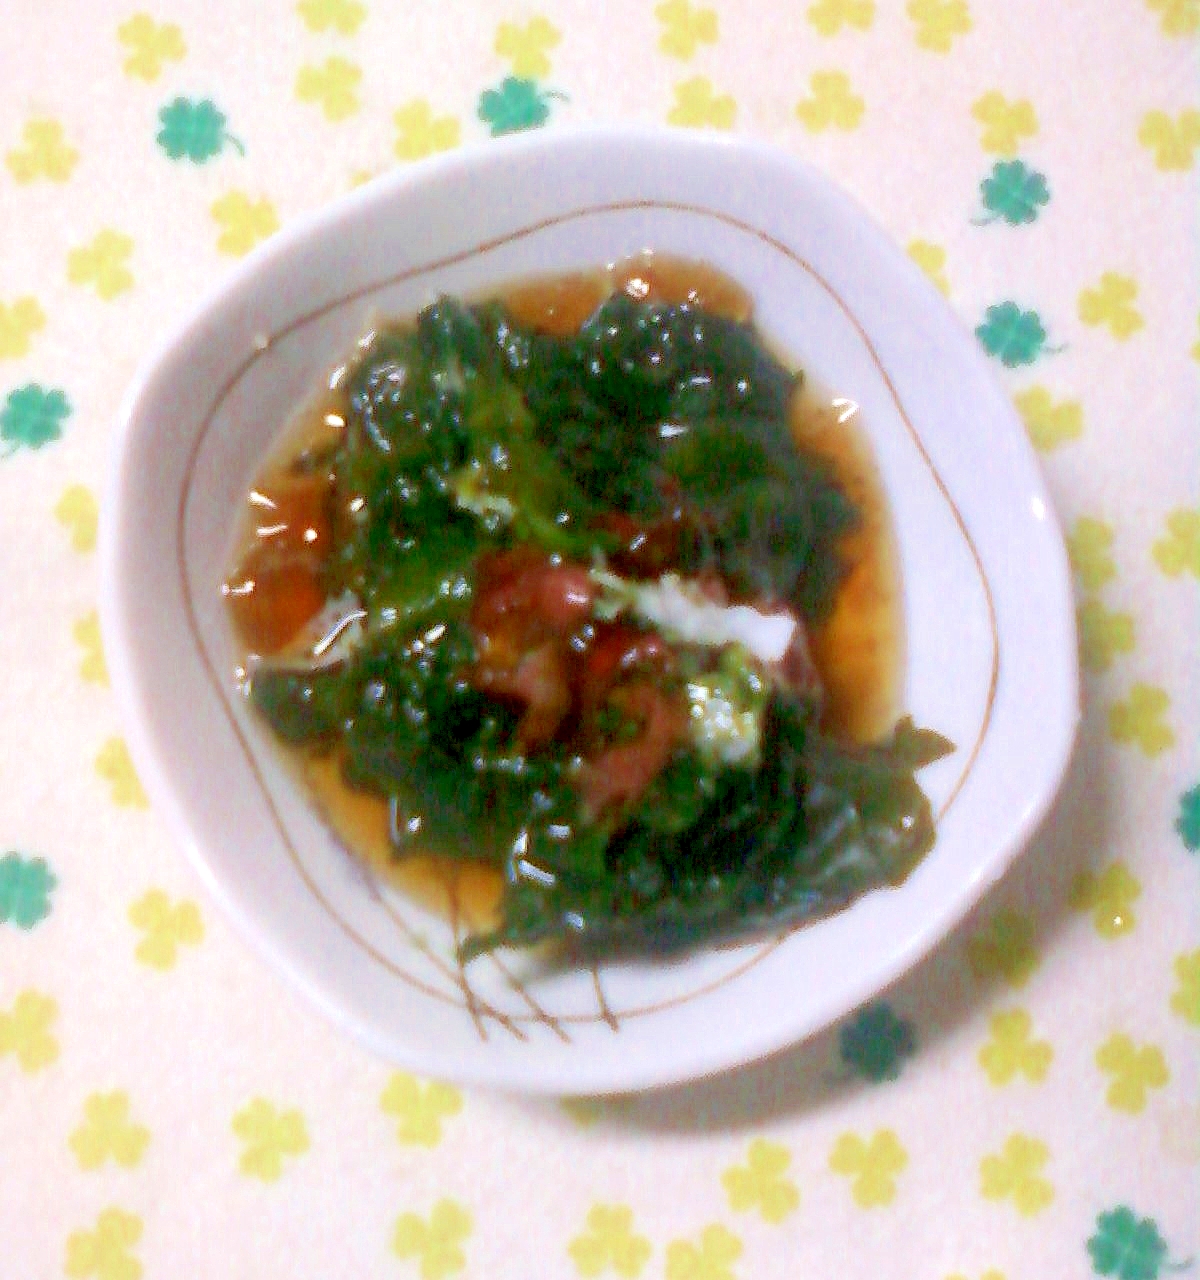 ☆・ポンジュレ醤油タレの海草サラダの和え物☆*:・